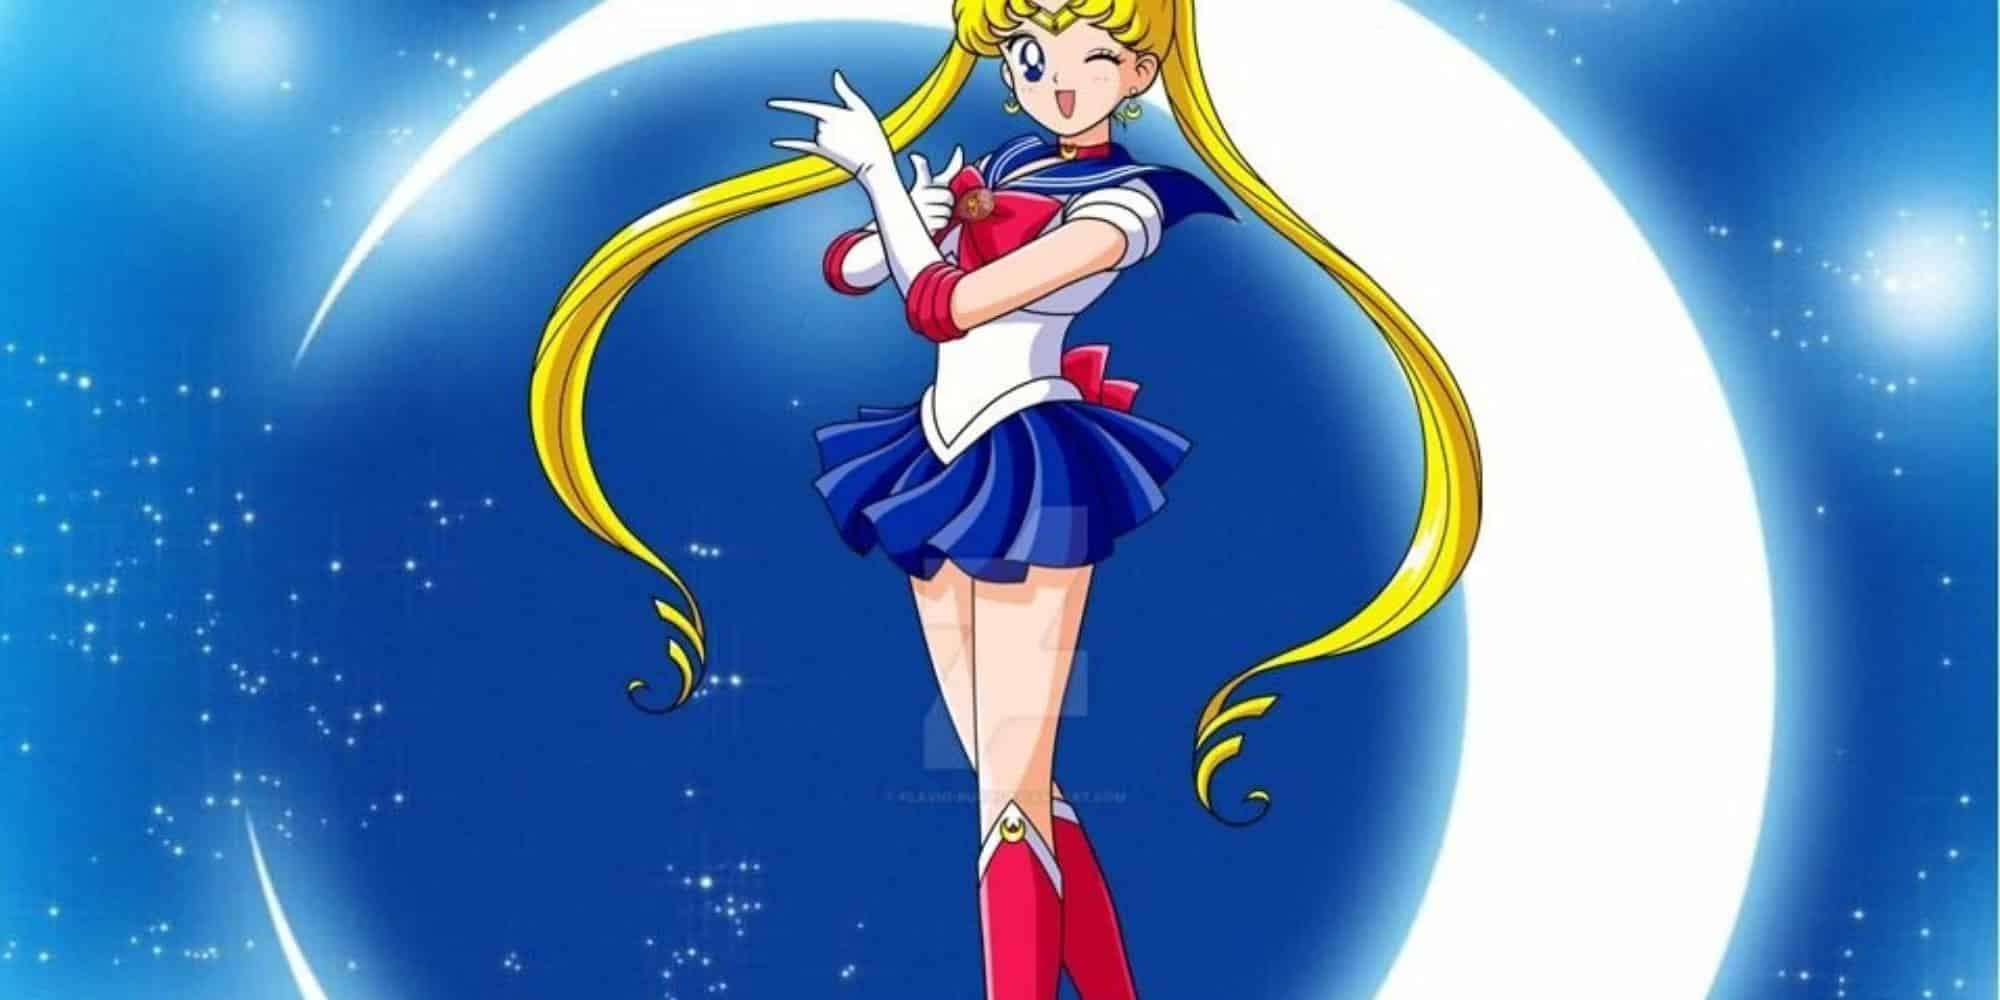 Sailor-Moon movie